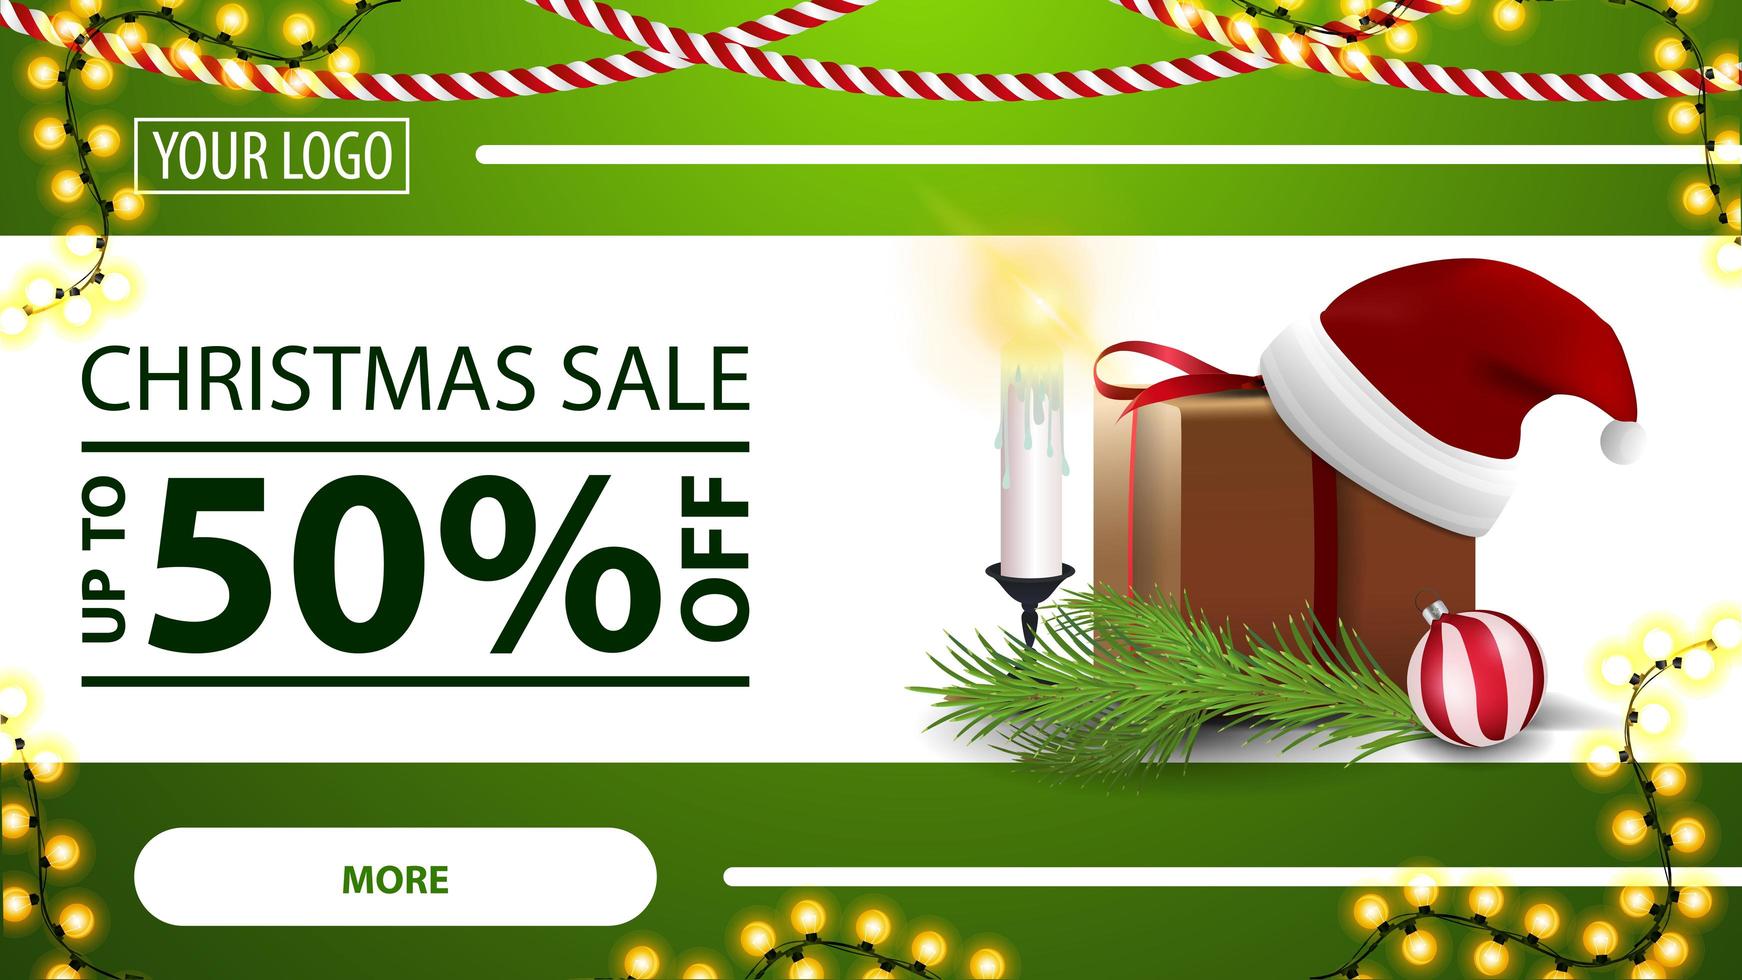 Weihnachtsverkauf, bis zu 50 Rabatt, grünes horizontales modernes Web-Banner mit Knopf, Girlande, Geschenk mit Weihnachtsmannhut, Kerzen, Weihnachtsbaumzweig und Weihnachtsball vektor